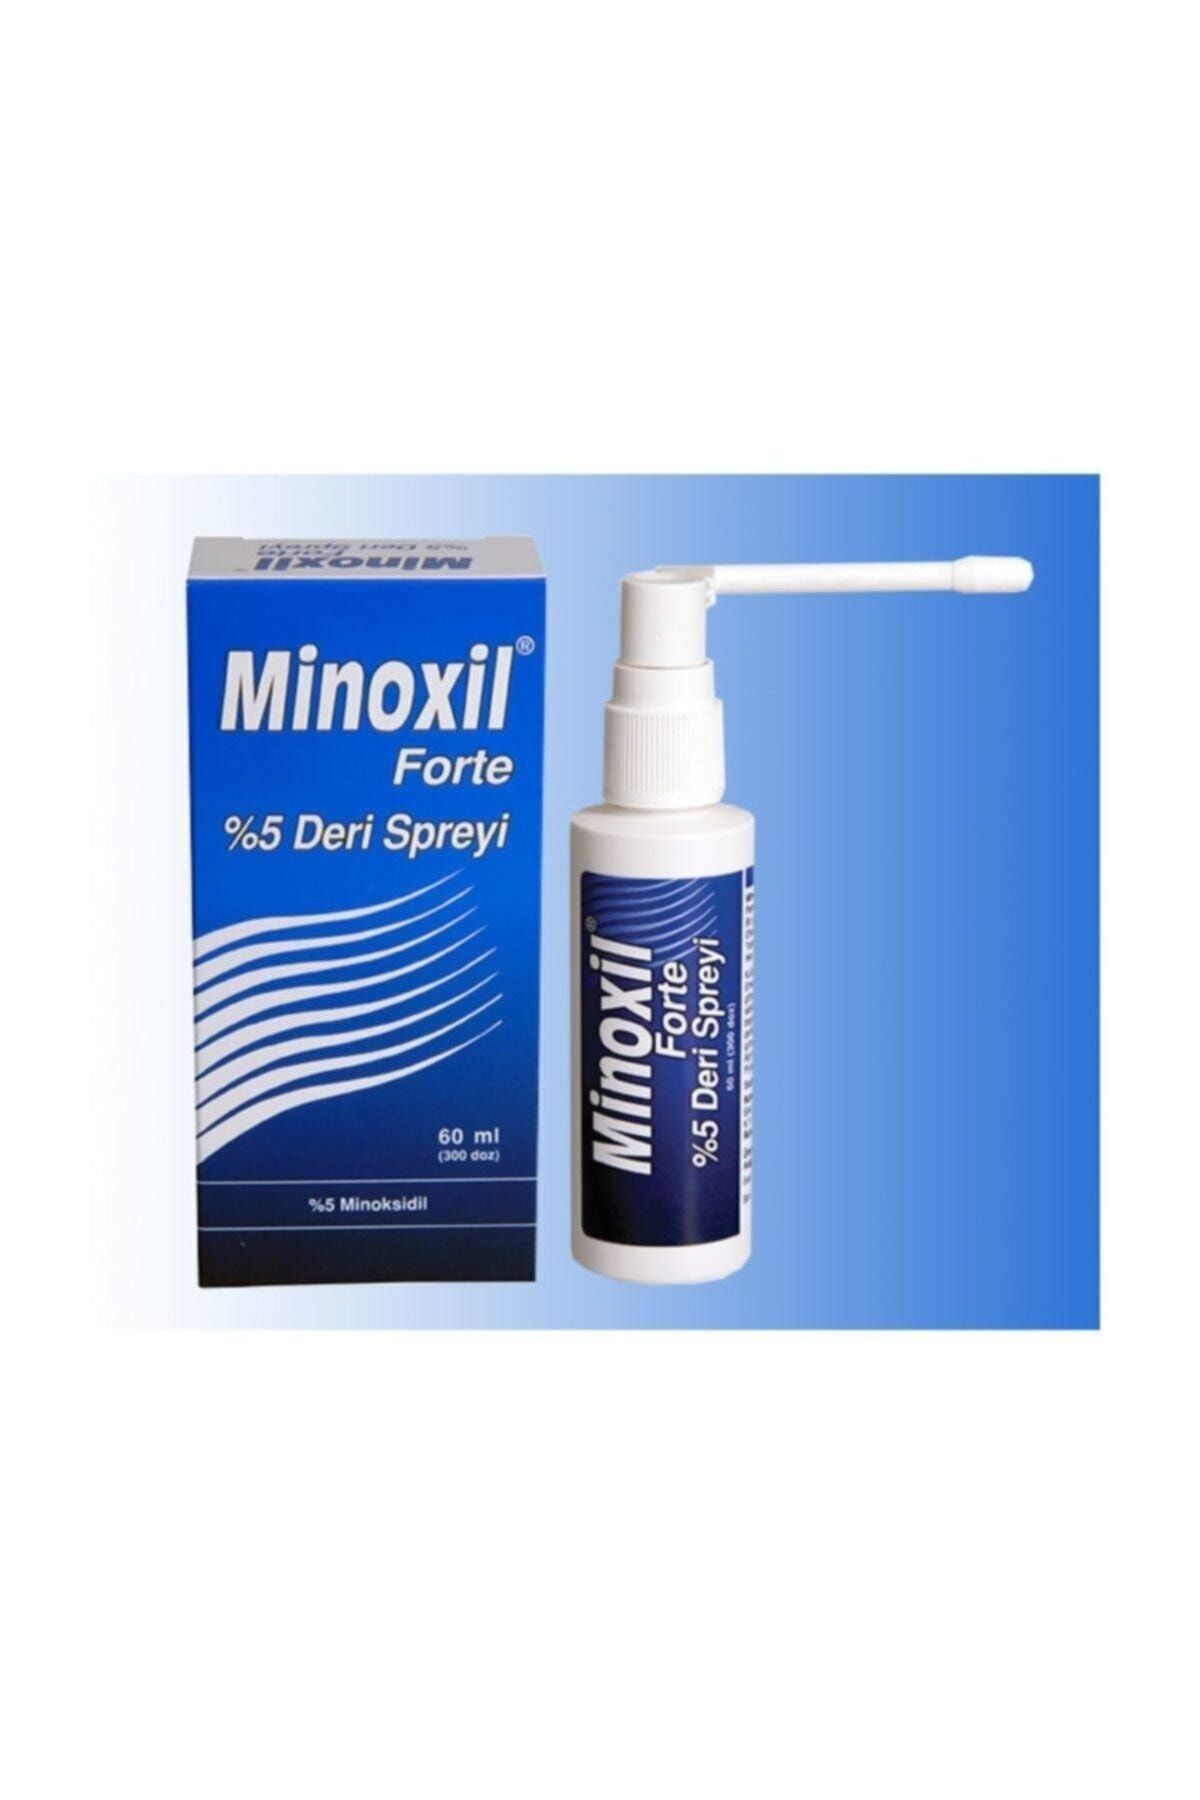 Minoxil Forte %5 Deri Spreyi 60 Ml - Saç Dökülme Önleyici Ve Saç Çıkarıcı